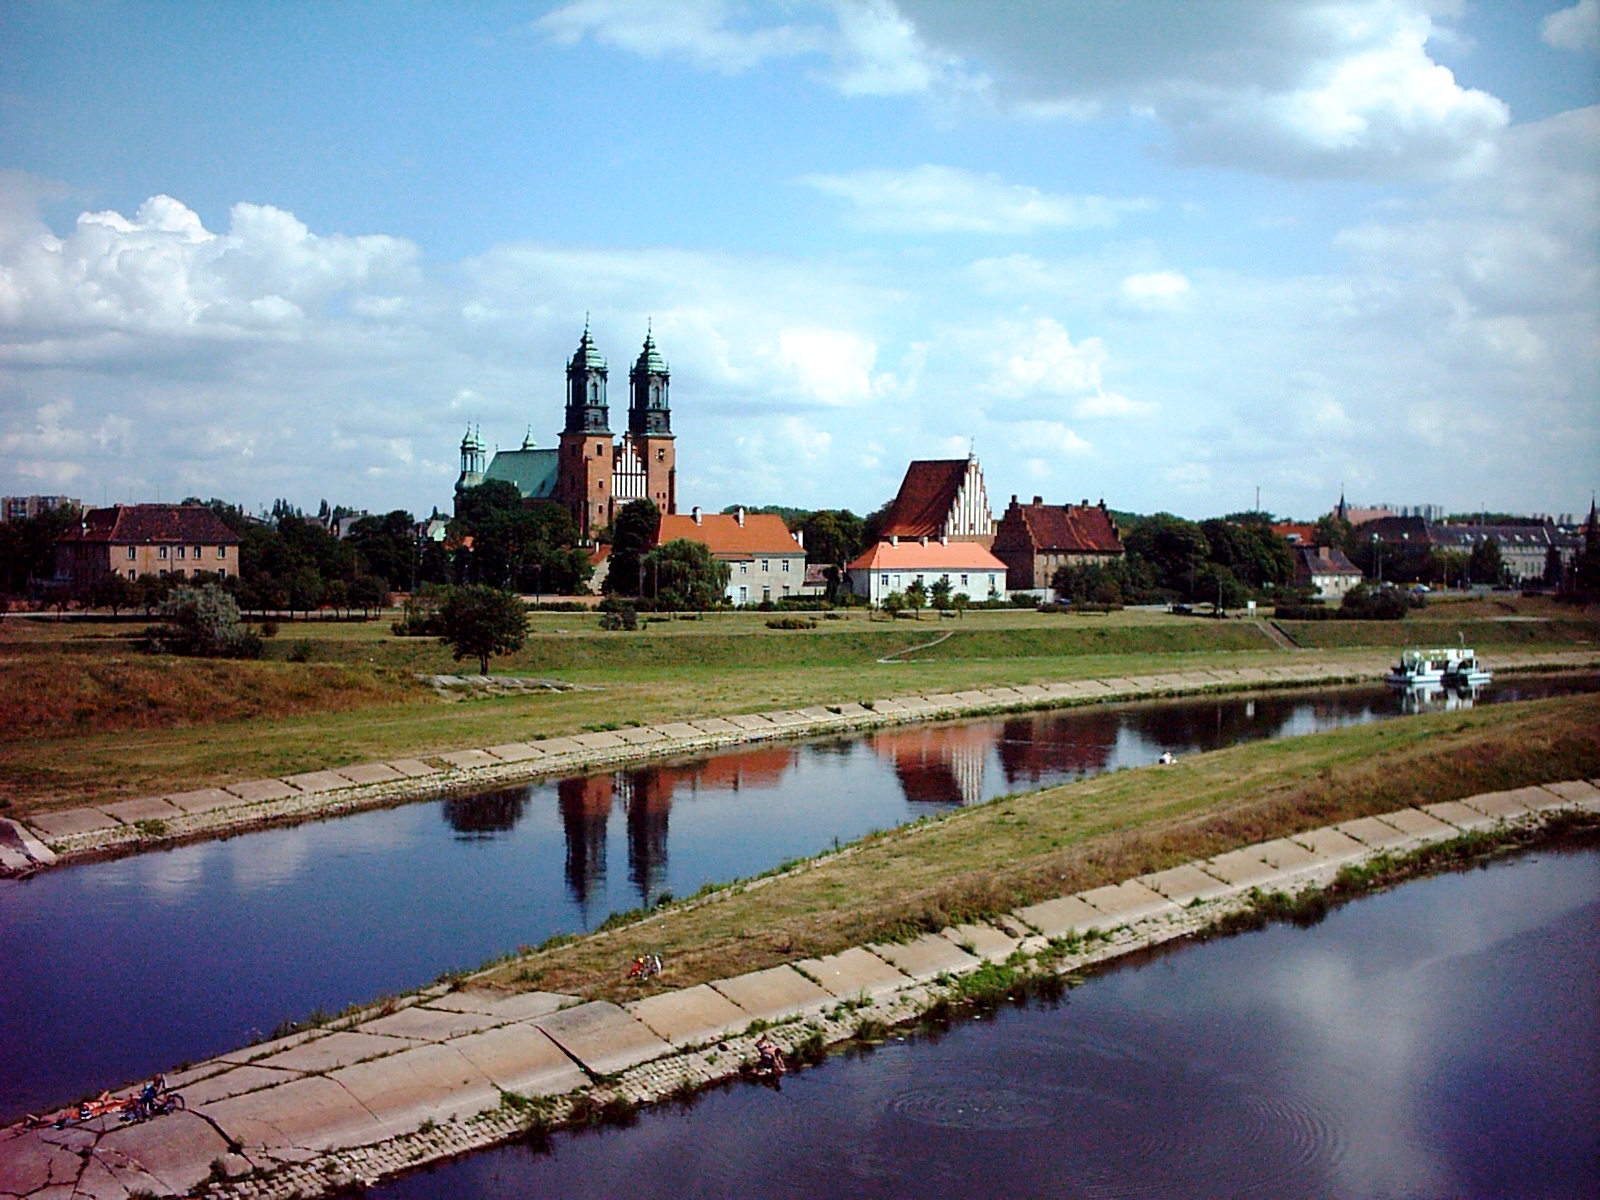 Pielgrzymka do Poznania, Owińsk i Gniezna oraz zwiedzanie rezerwatu archeologicznego w Biskupinie